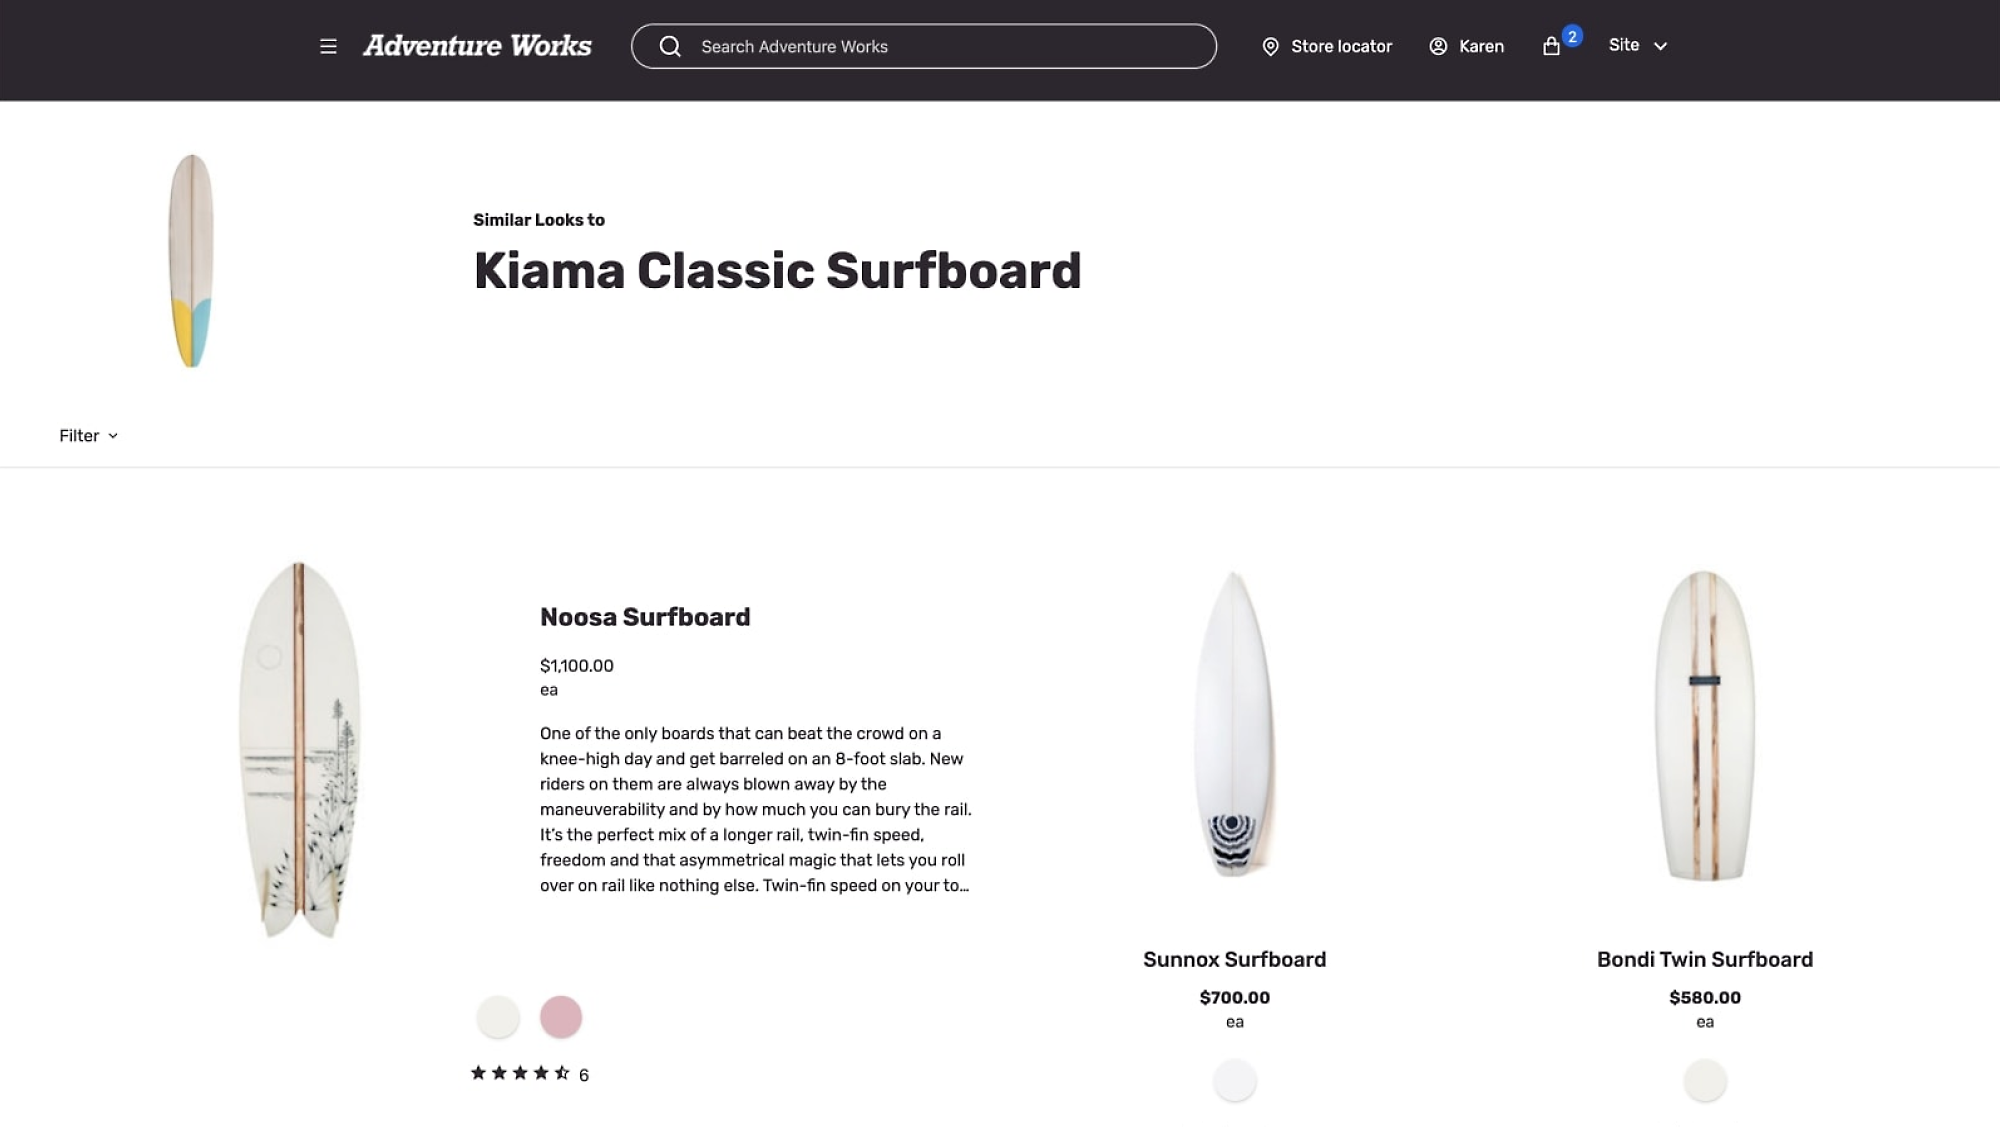 Descripciones de tablas de surf de Adventure Works con precios: Tablas de surf de Kiama Classic, Noosa, Sunnox y Bondi Twin